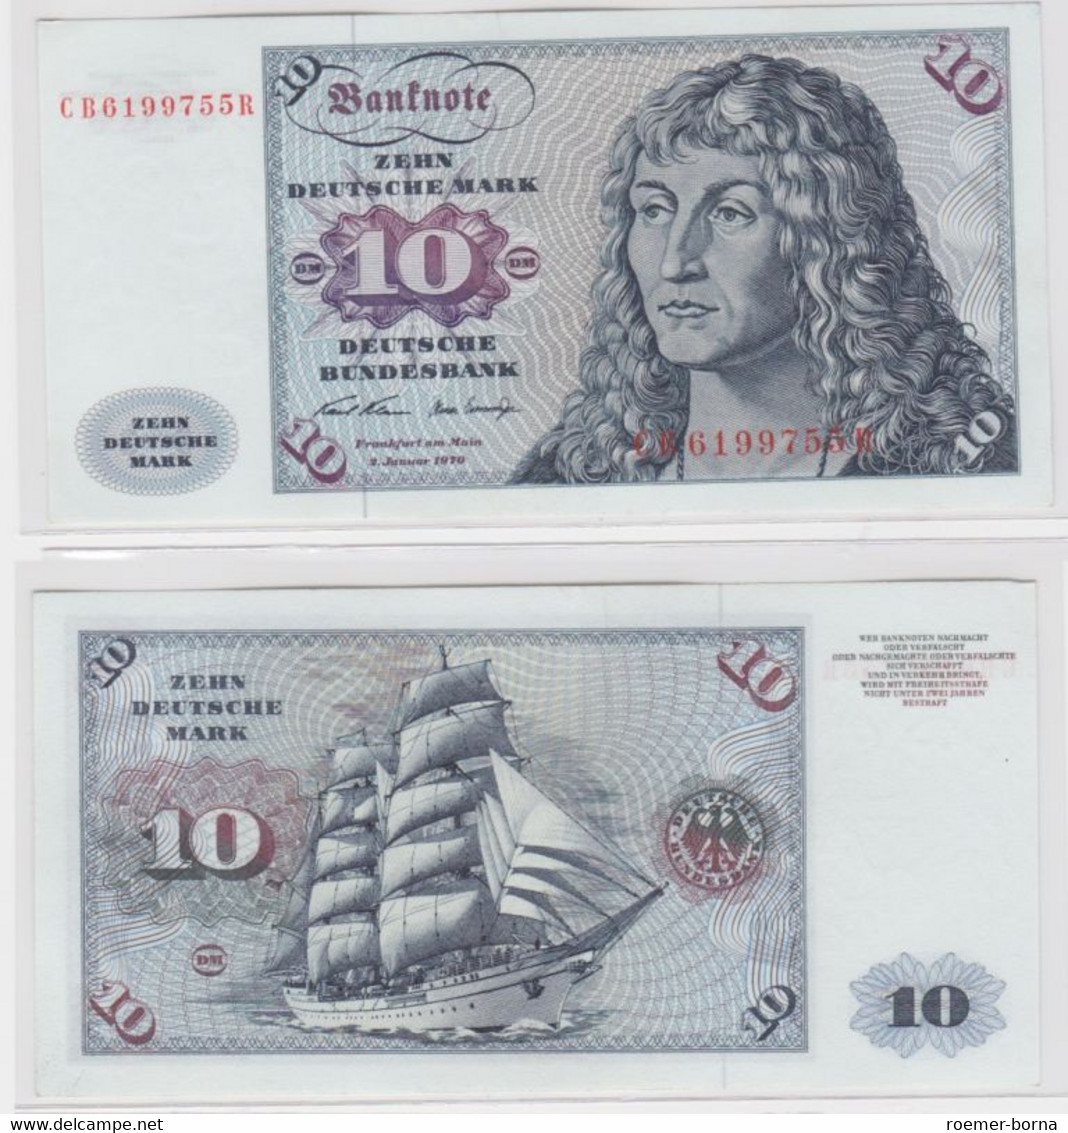 T144803 Banknote 10 DM Deutsche Mark Ro. 270a Schein 2.Jan. 1970 KN CB 6199755 R - 10 Deutsche Mark